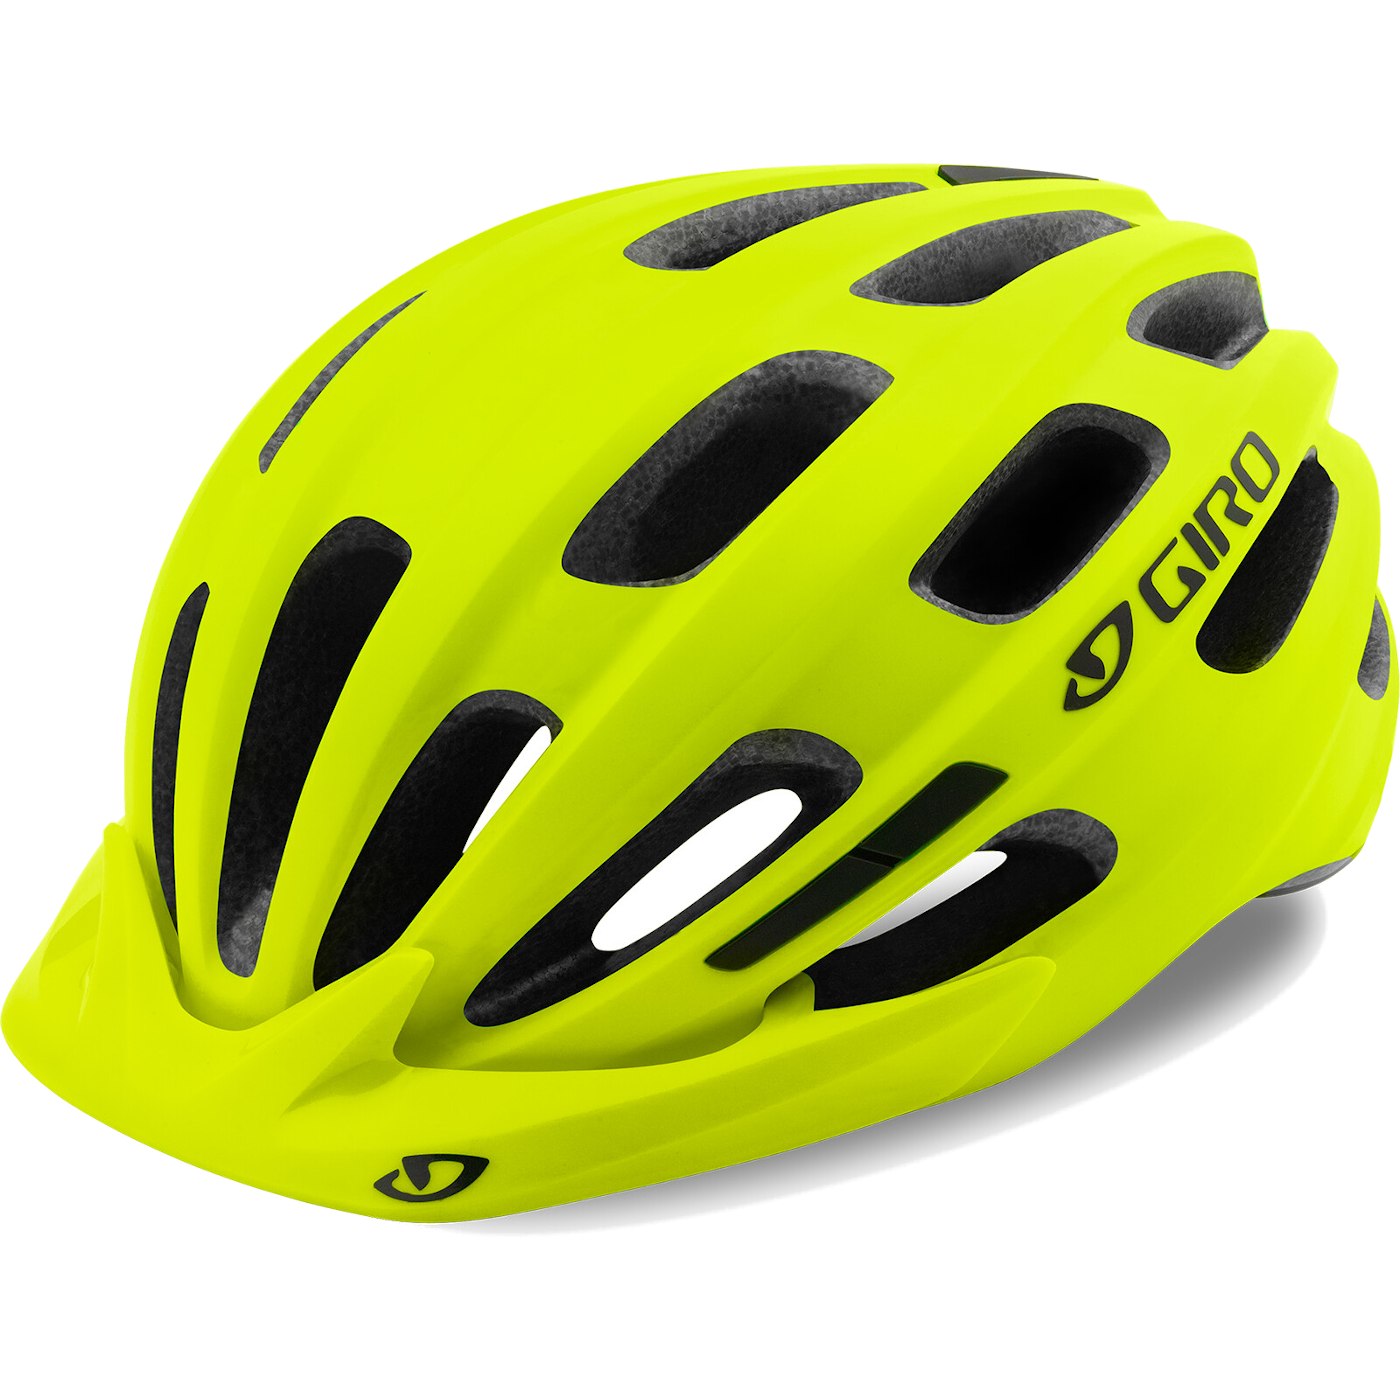 Produktbild von Giro Register Unisize Helm - highlight yellow